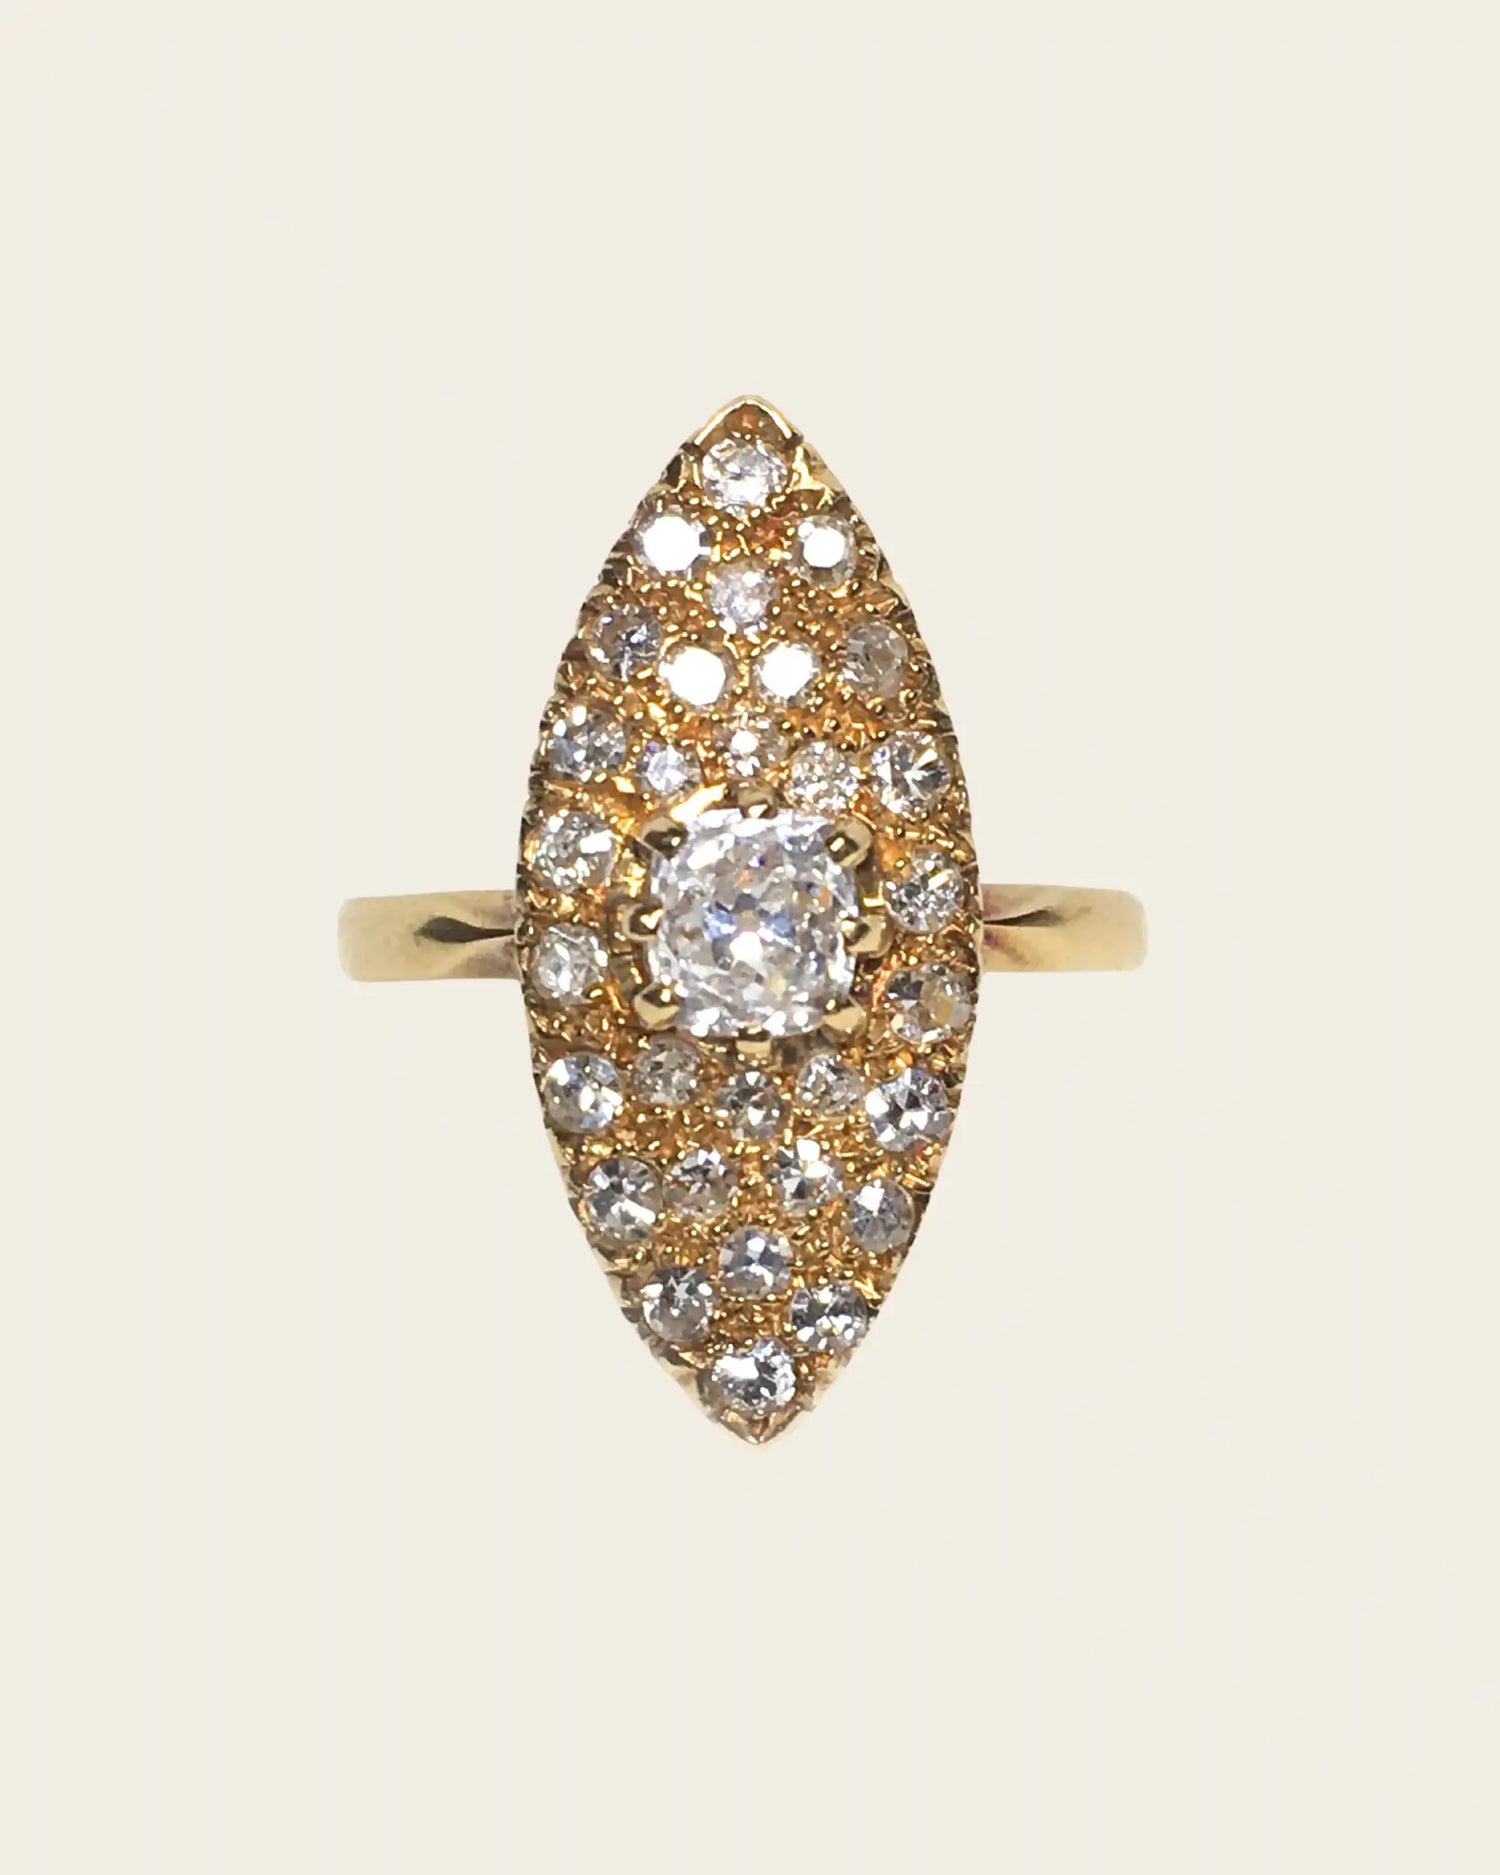 Vintage diamond ring Vintage diamond ring Vintage at the Squash Blossom Vintage at the Squash Blossom  Squash Blossom Vail